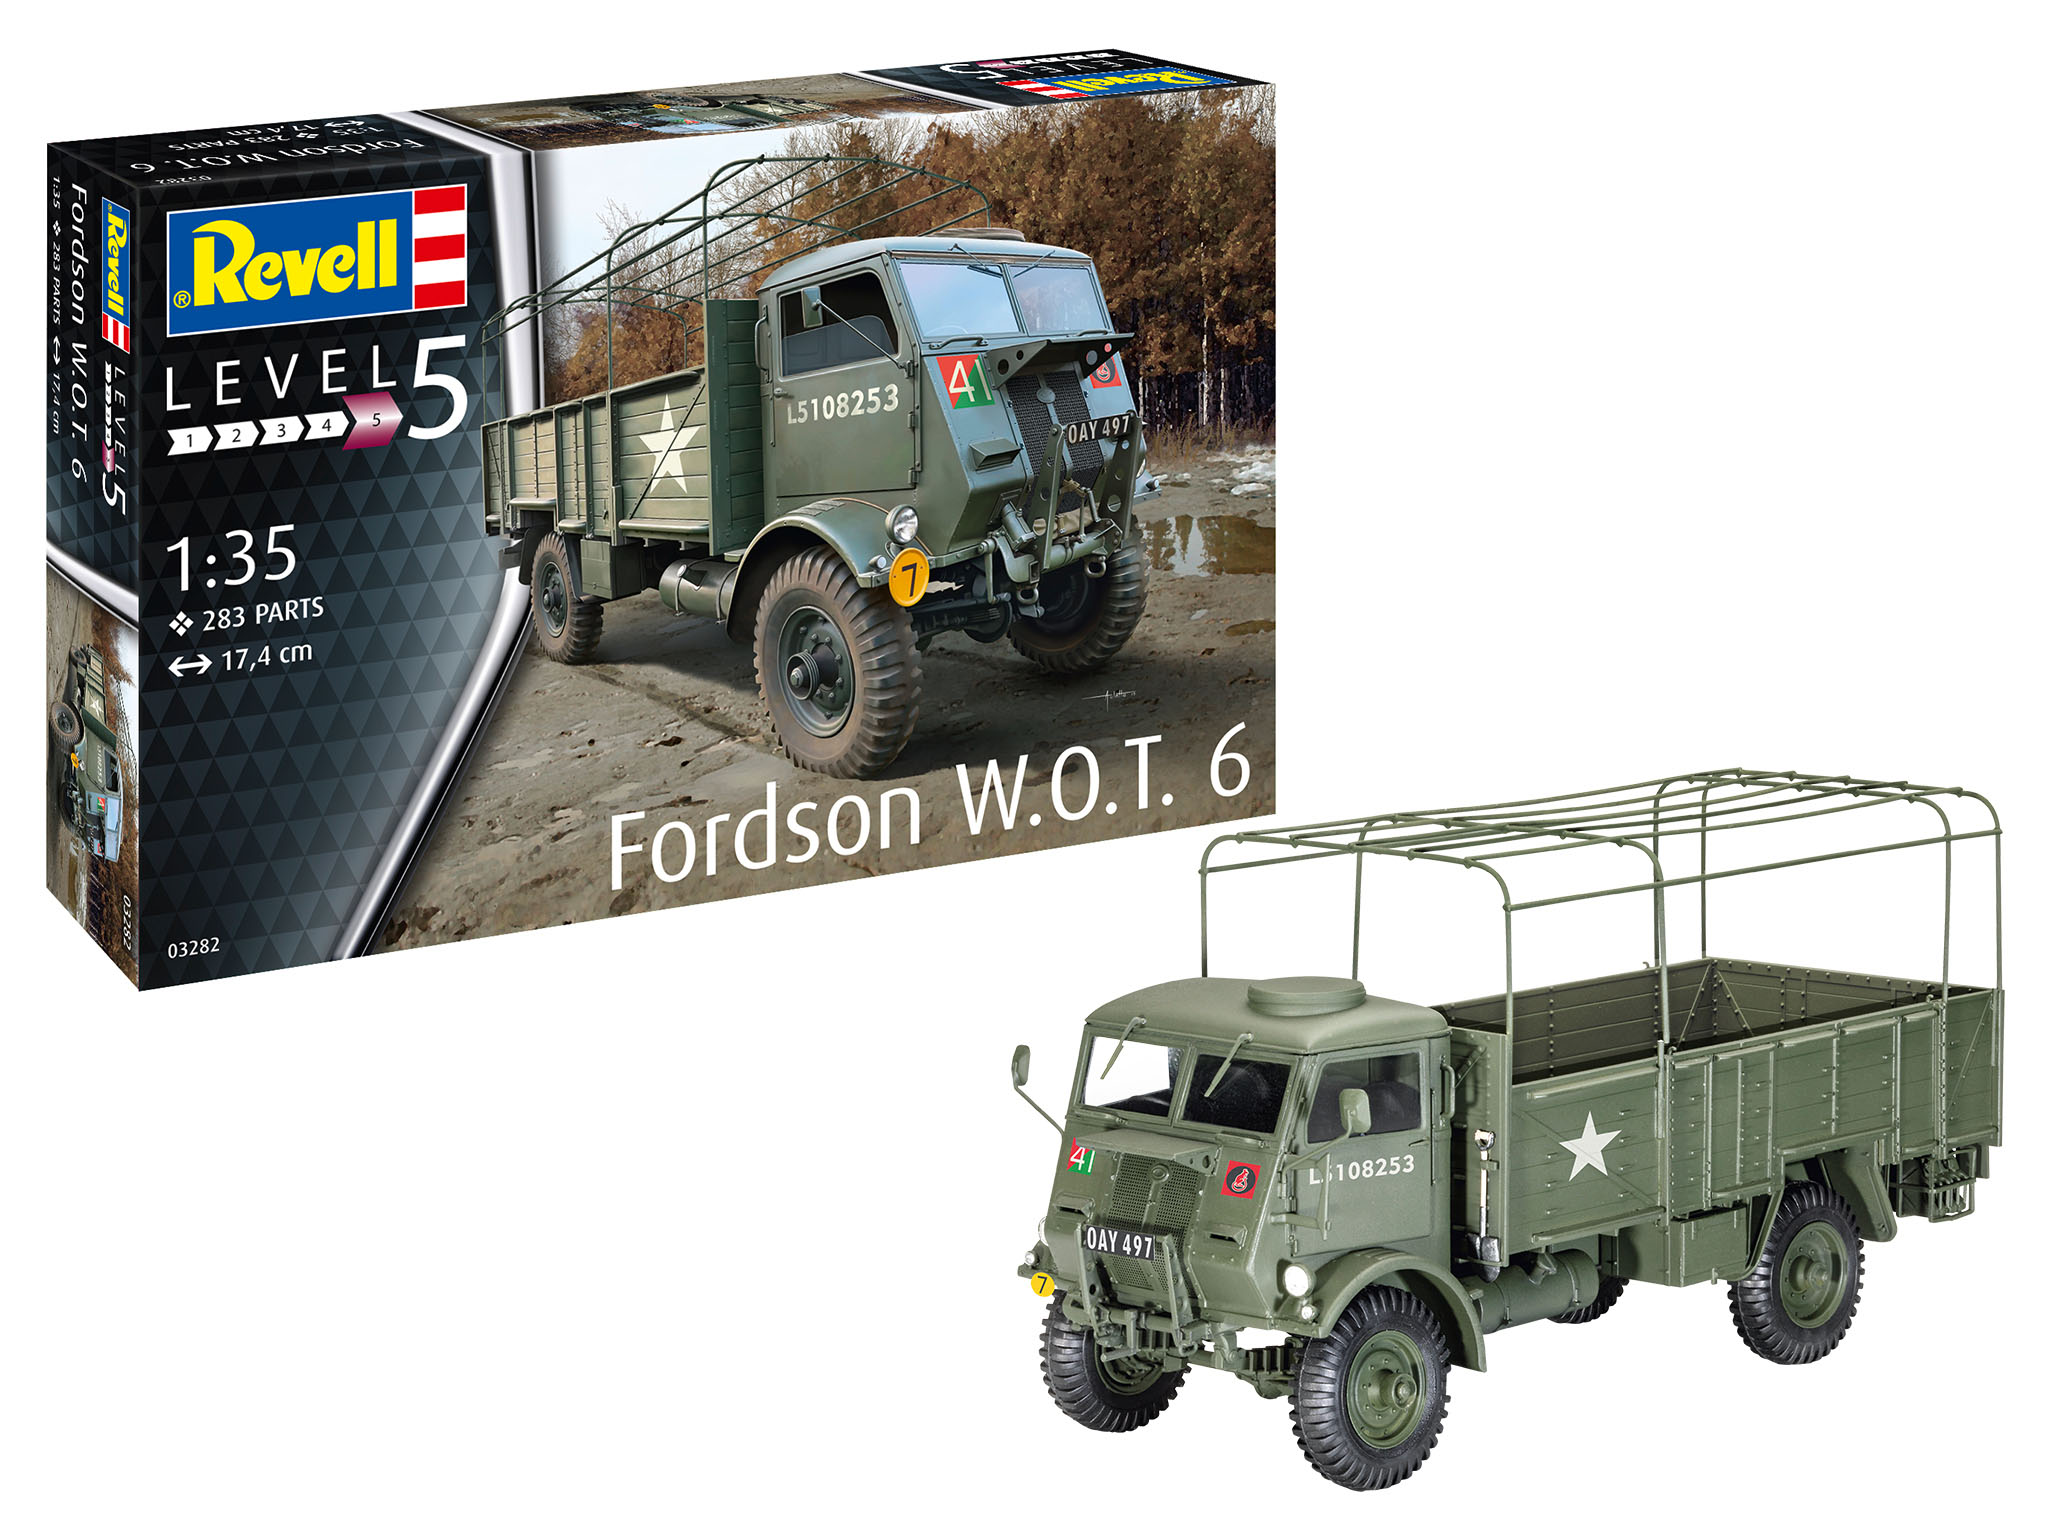 Revell Fordson W.O.T. 6 in 1:35 bouwpakket